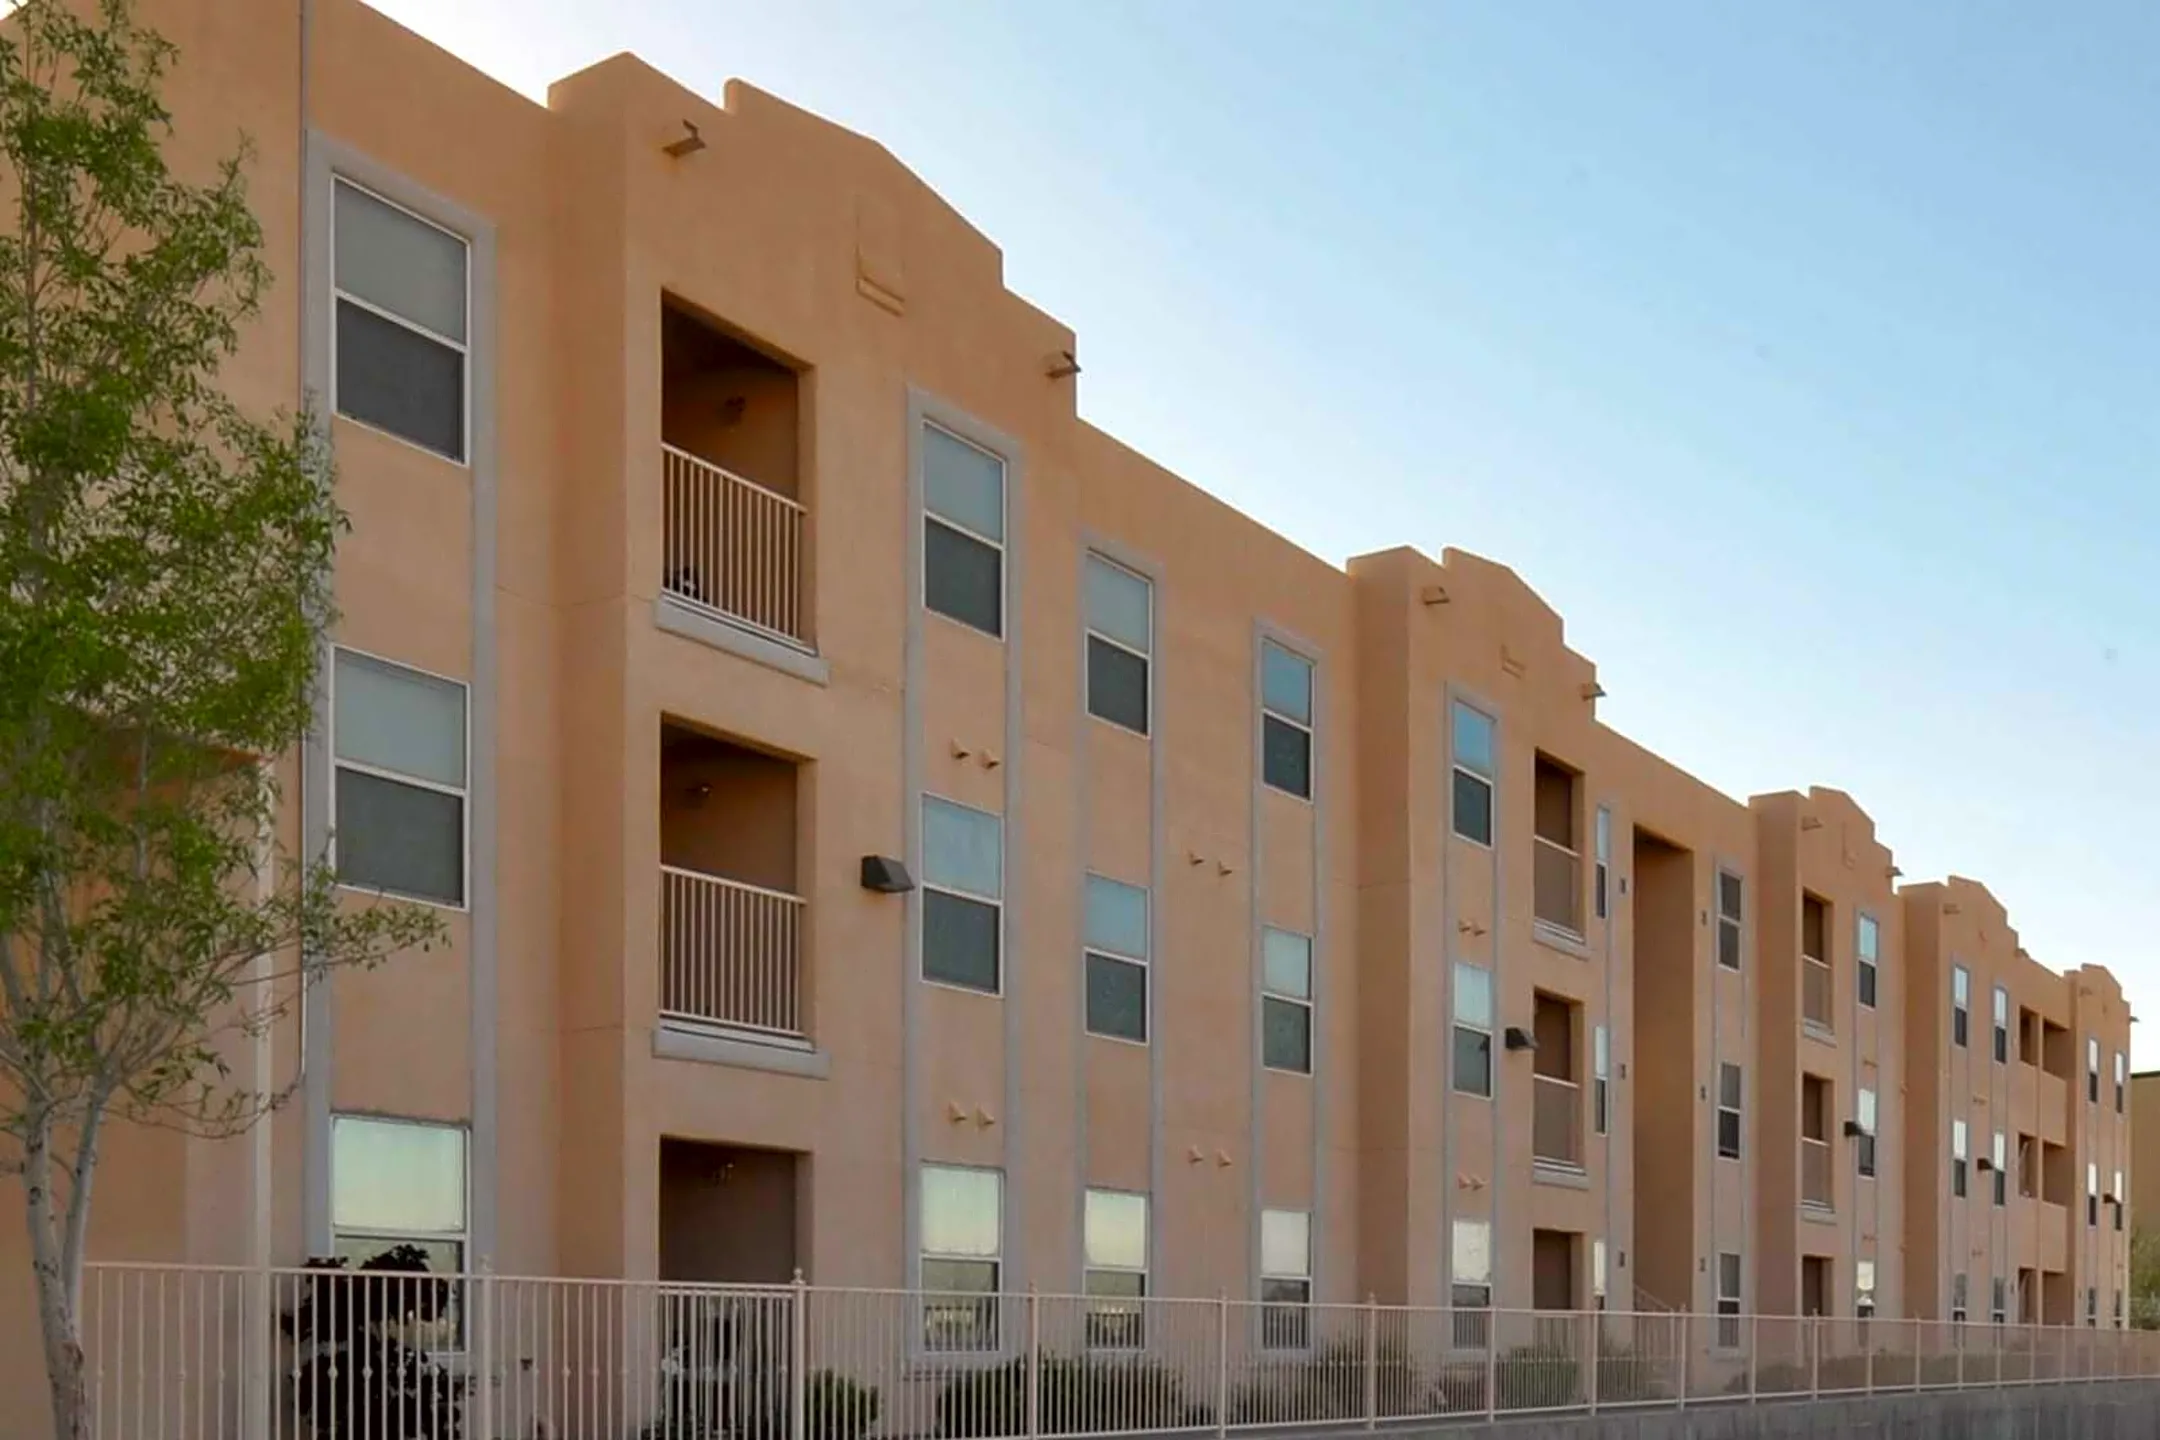 Building - Desert Village Apartments - El Paso, TX